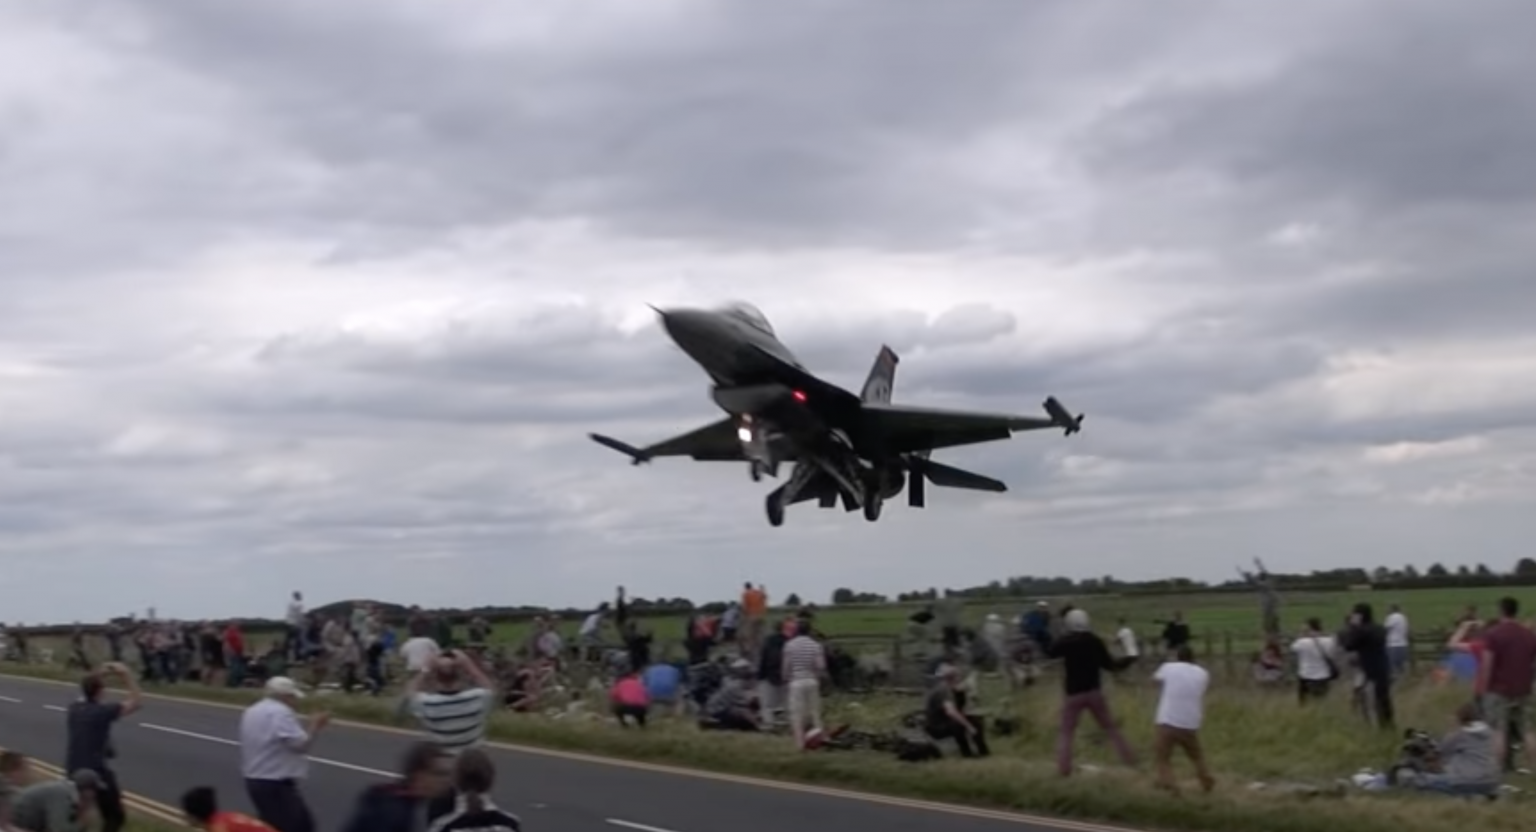 ‘Ludi’ turski pilot: Pogledajte šta je uradio ovaj pilot sa F-16 (VIDEO)